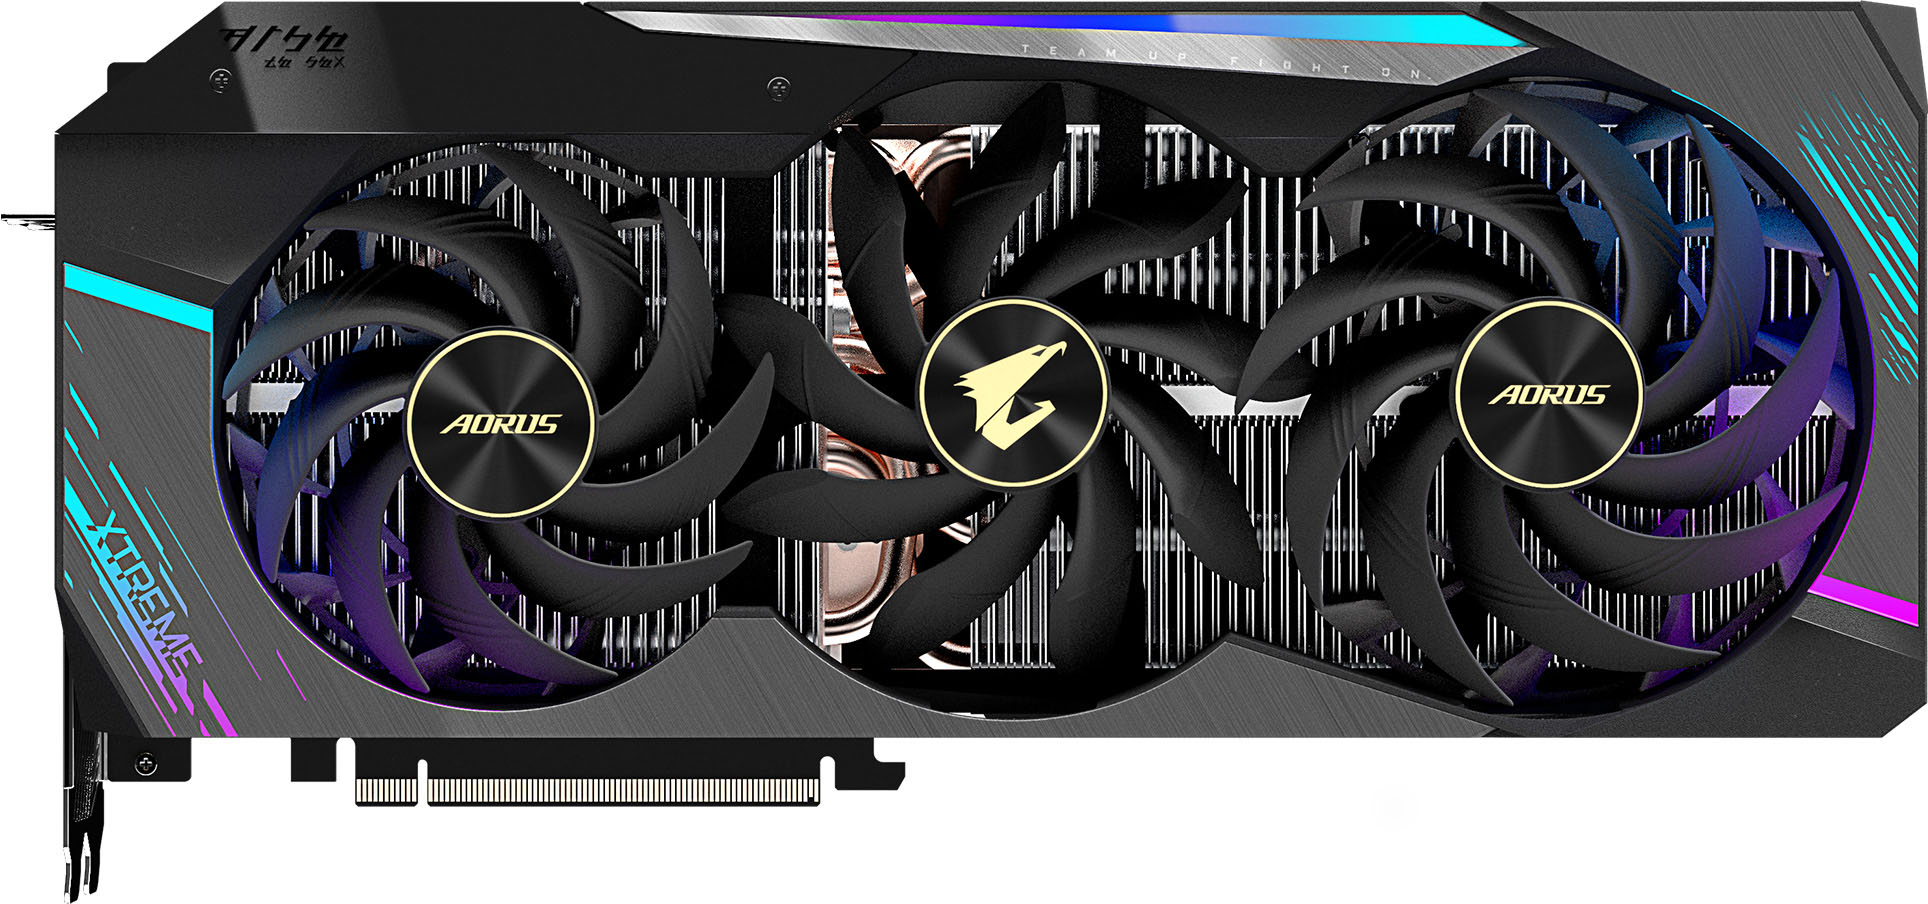 GIGABYTE NVIDIA GeForce RTX 3090 AORUS XTREME - Best Buy